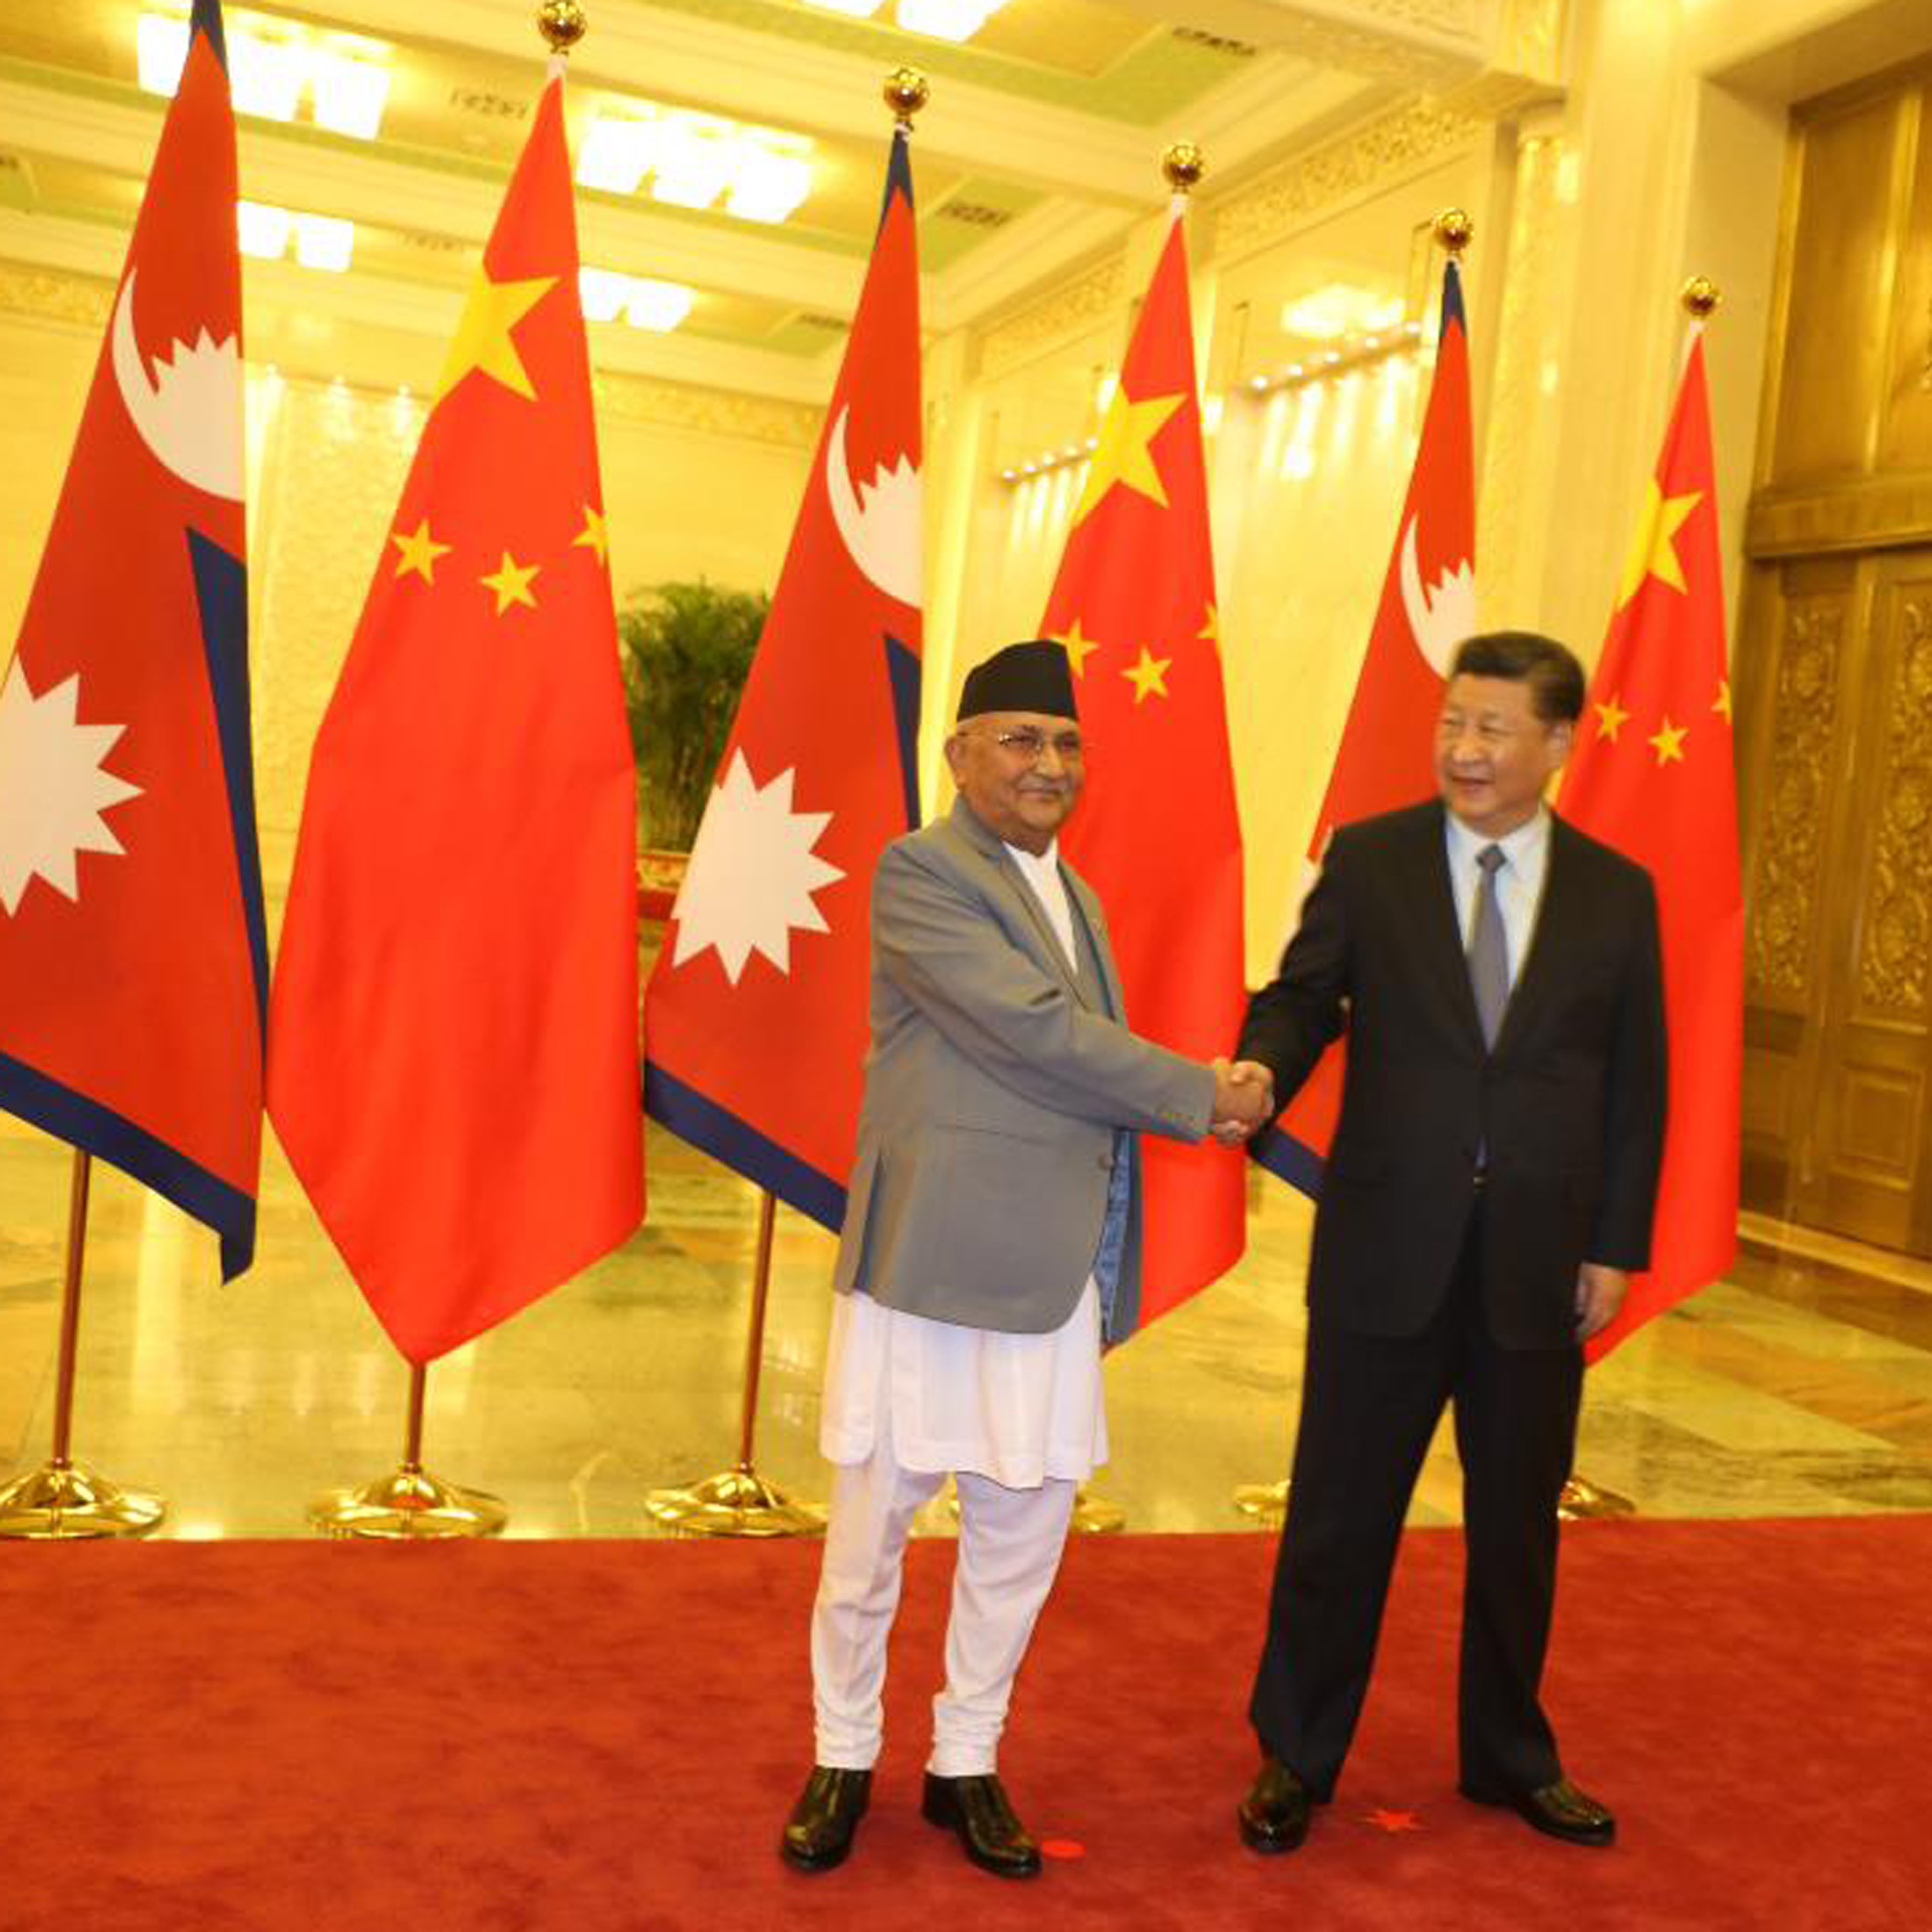 प्रधानमन्त्रीको चीन भ्रमण : यस्तो छ नेपाल–चीन संयुक्त वक्तव्य